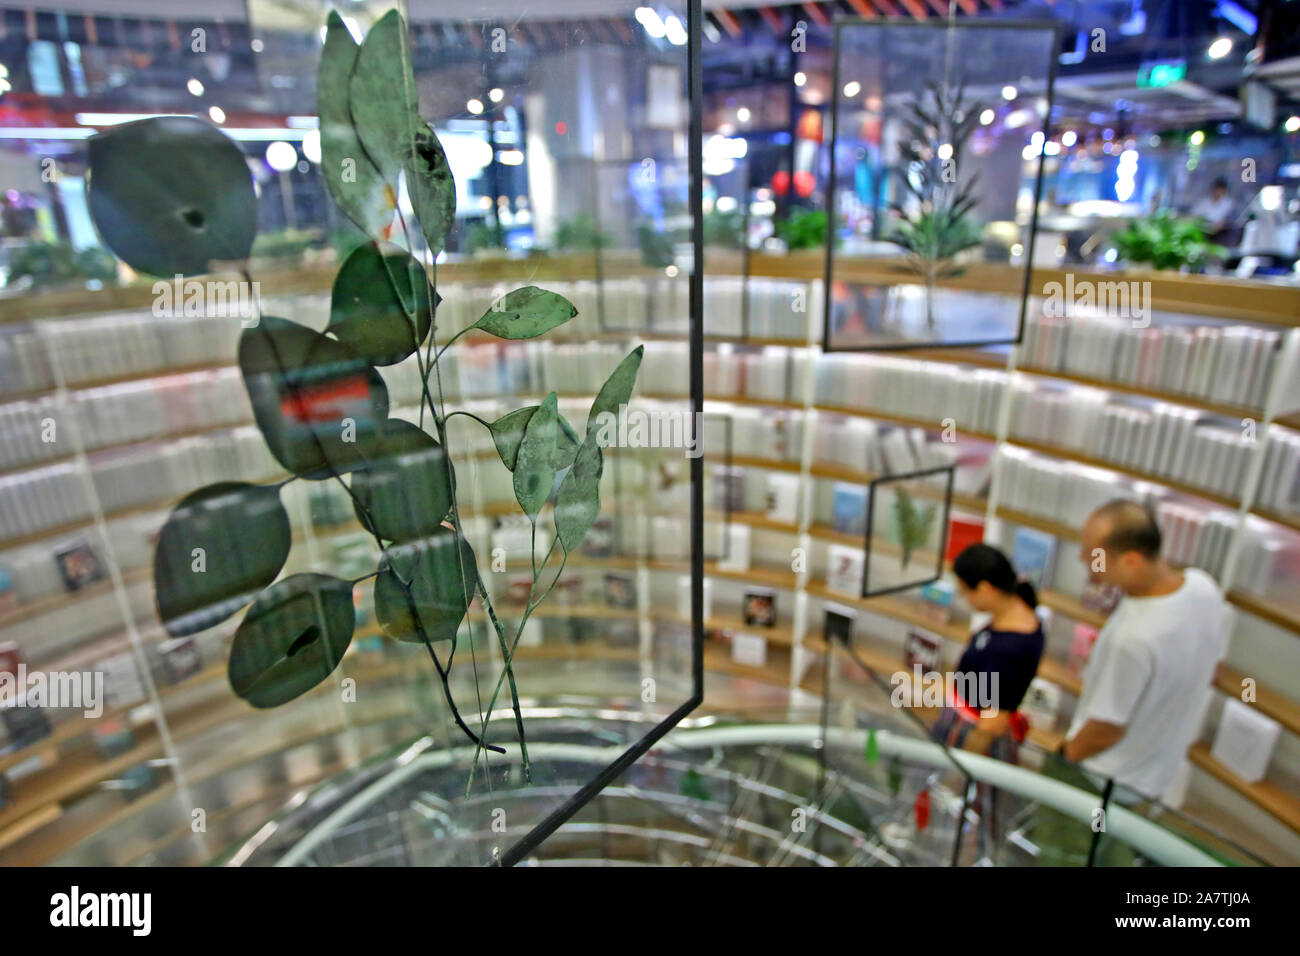 Erbario nella lastra di vetro che si compone di un edificio a tre piani di alta wind chime con altri riquadri simili a Xi'an City, a sud-ovest della Cina di provincia di Shaanxi, 1 A Foto Stock